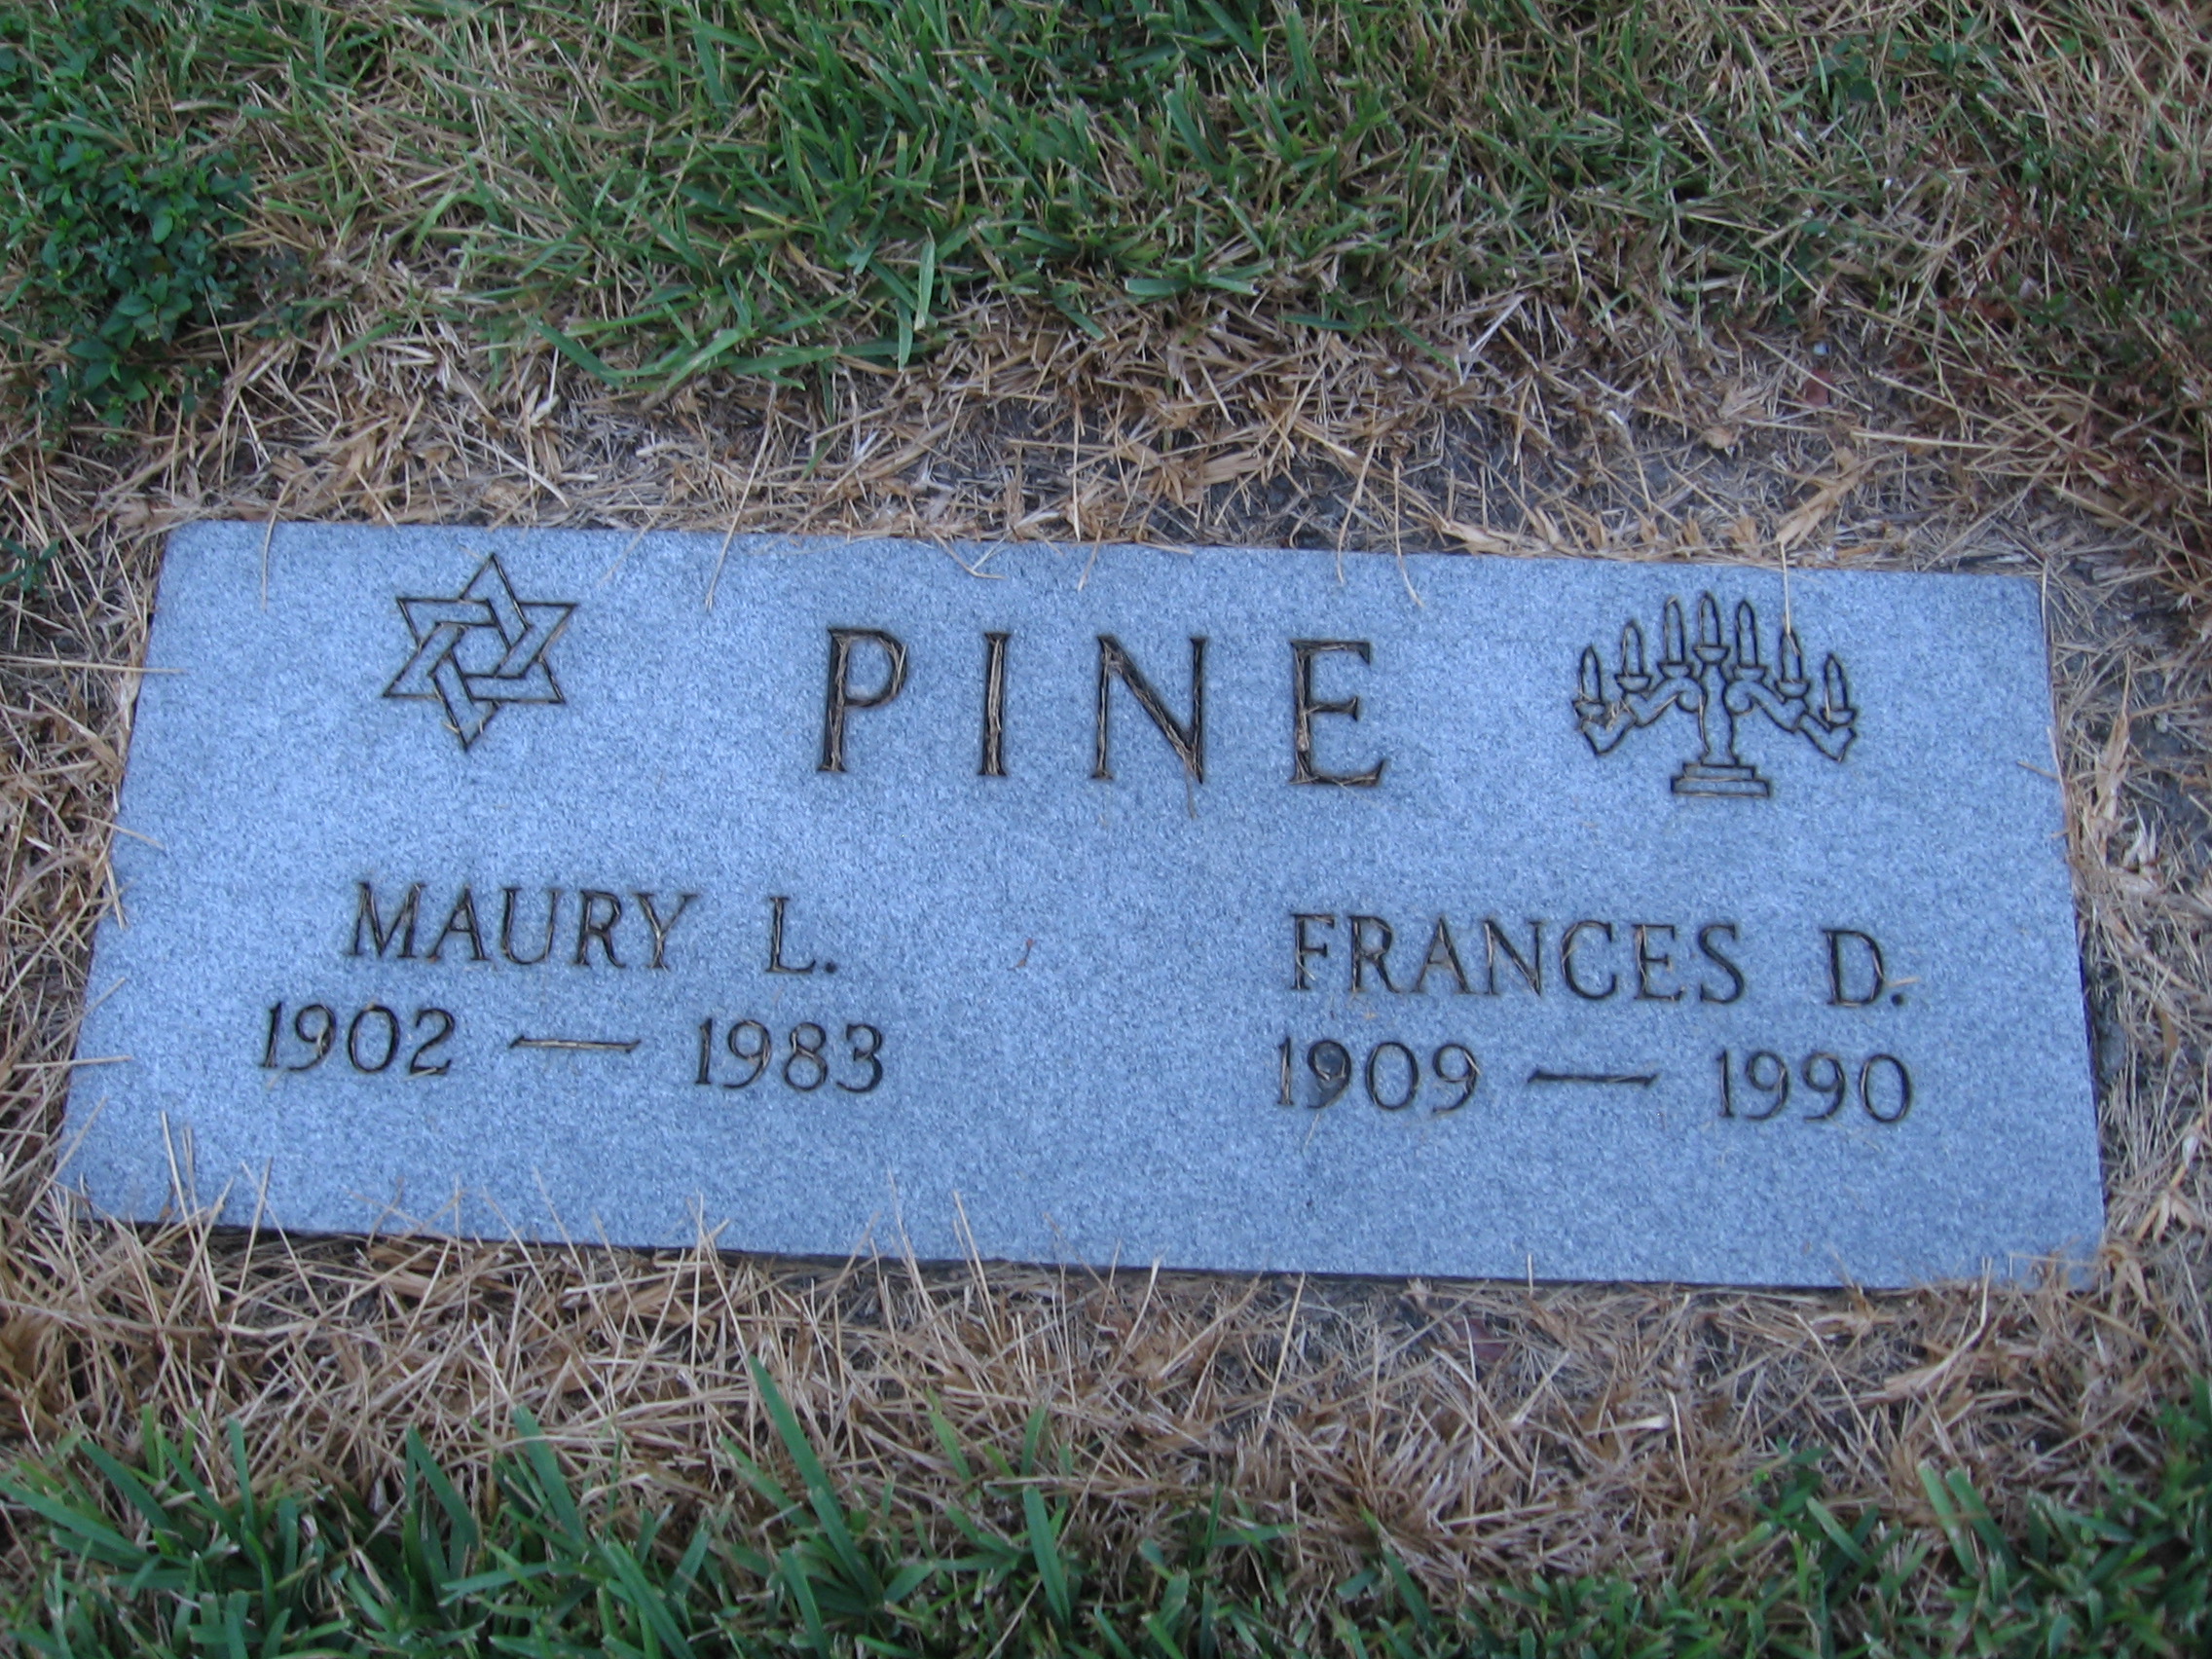 Maury L Pine